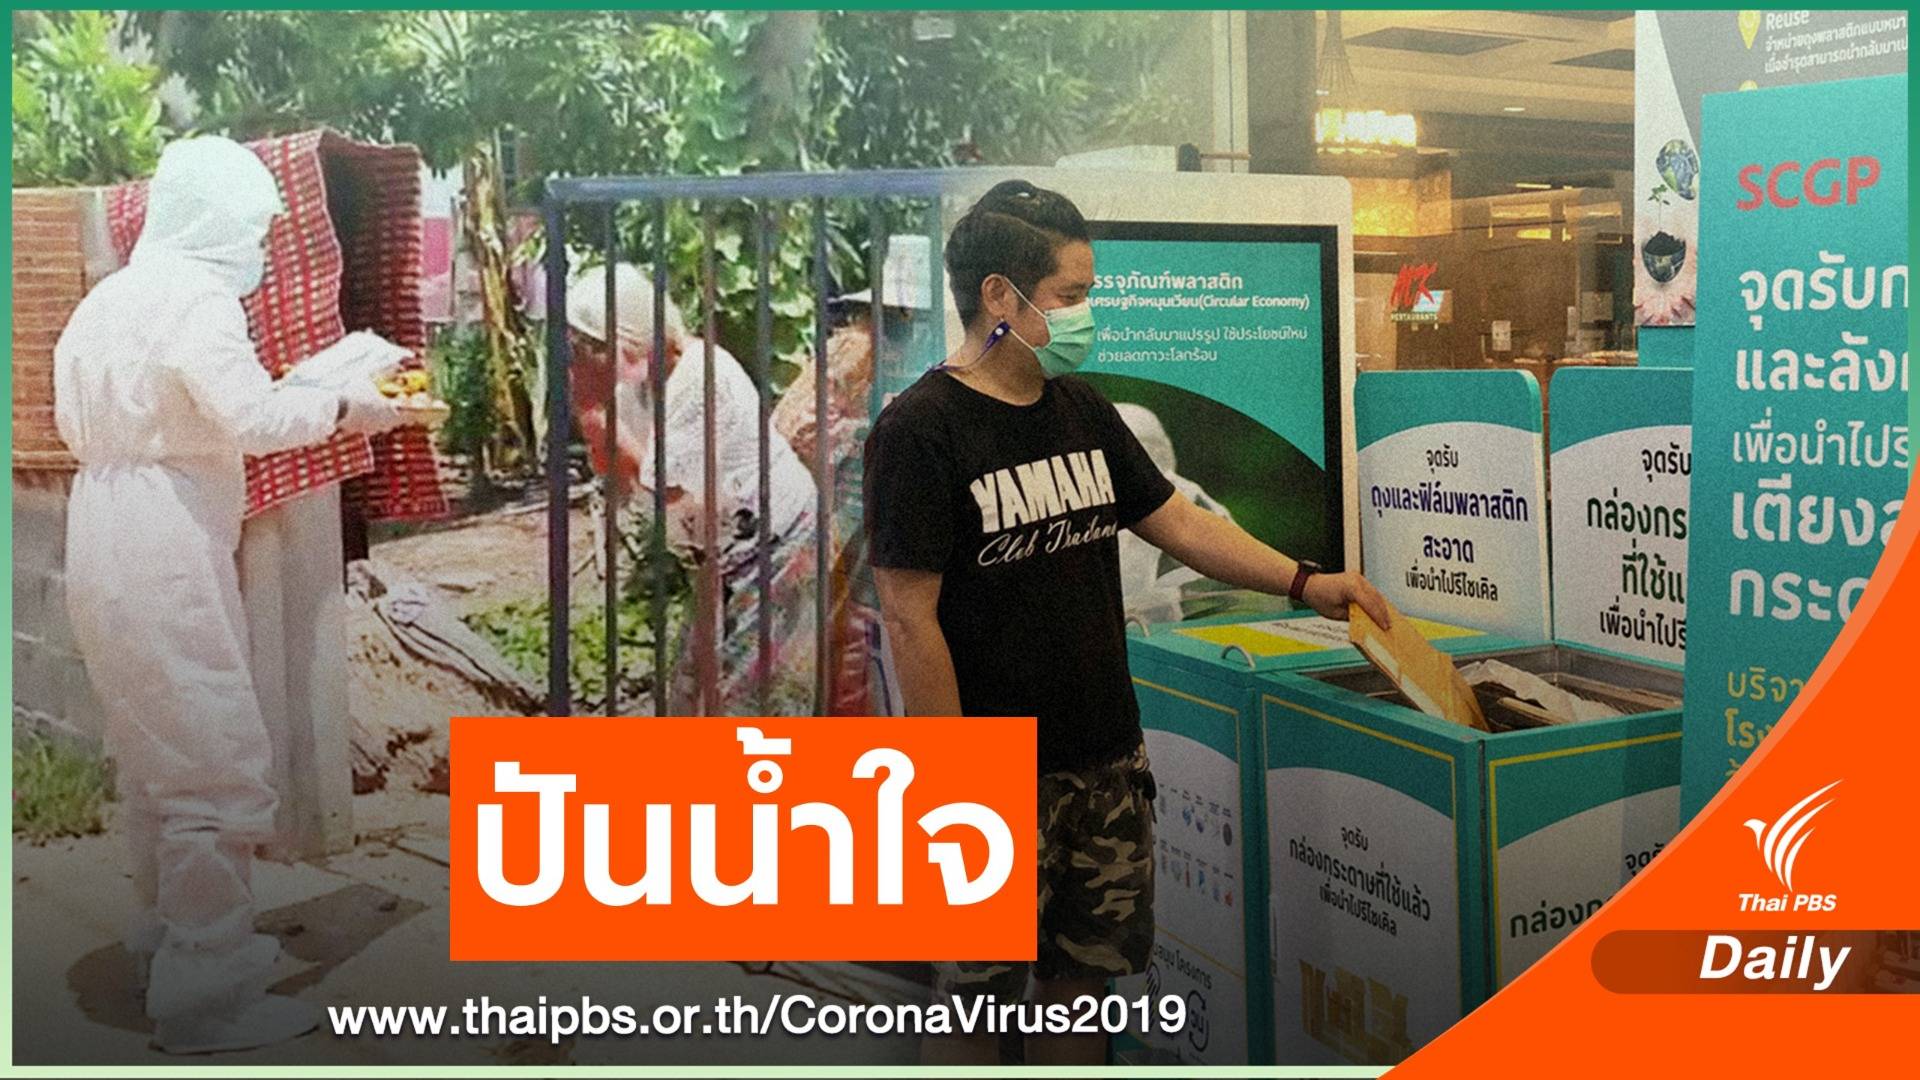 คนไทยปันน้ำใจ สู้วิกฤต COVID-19